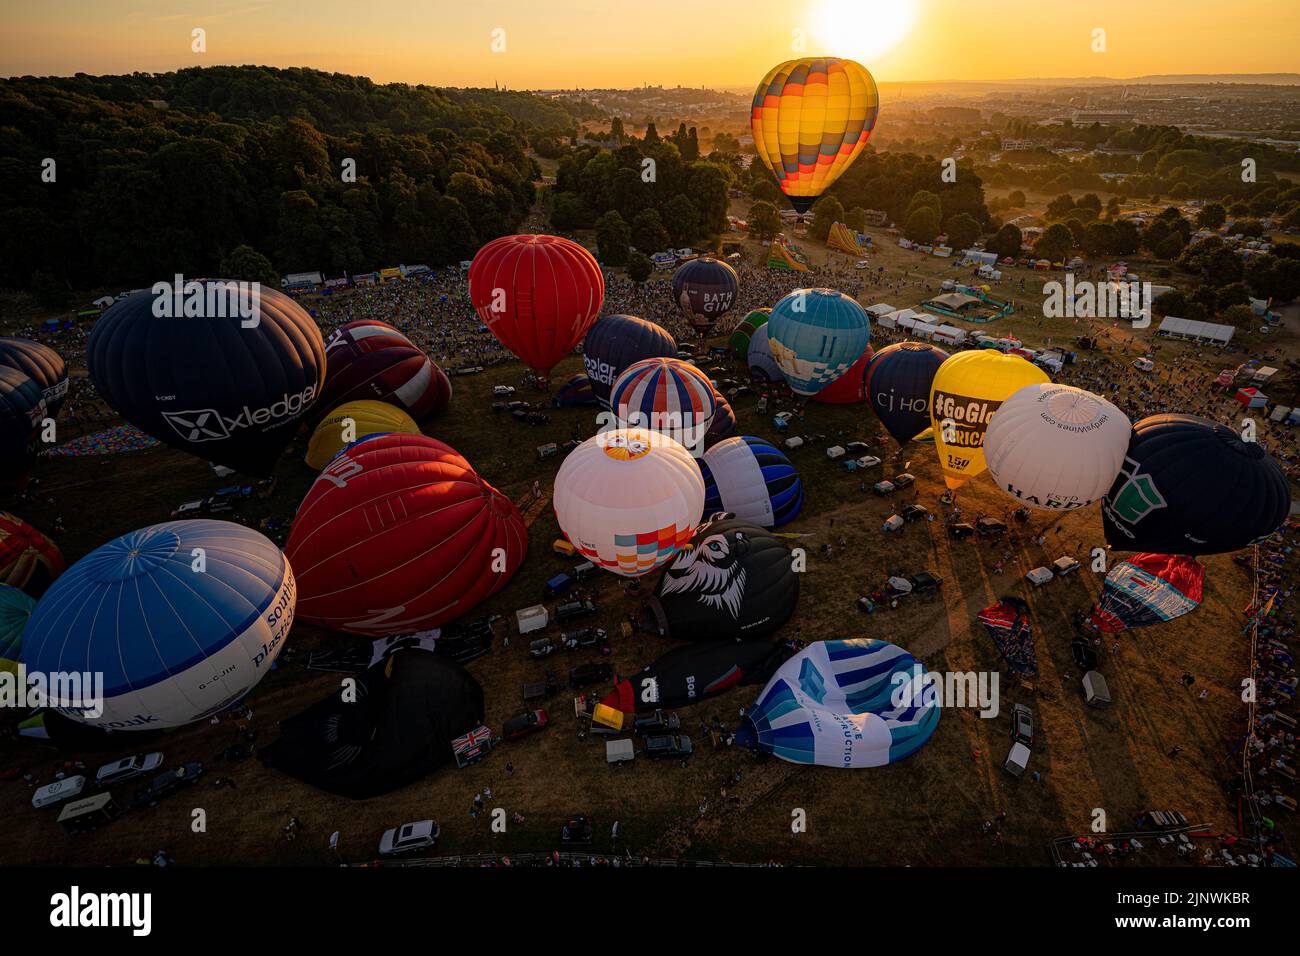 Le mongolfiere prendono il via durante la salita di massa della Bristol International Balloon Fiesta 2022. Data immagine: Domenica 14 agosto 2022. Foto Stock